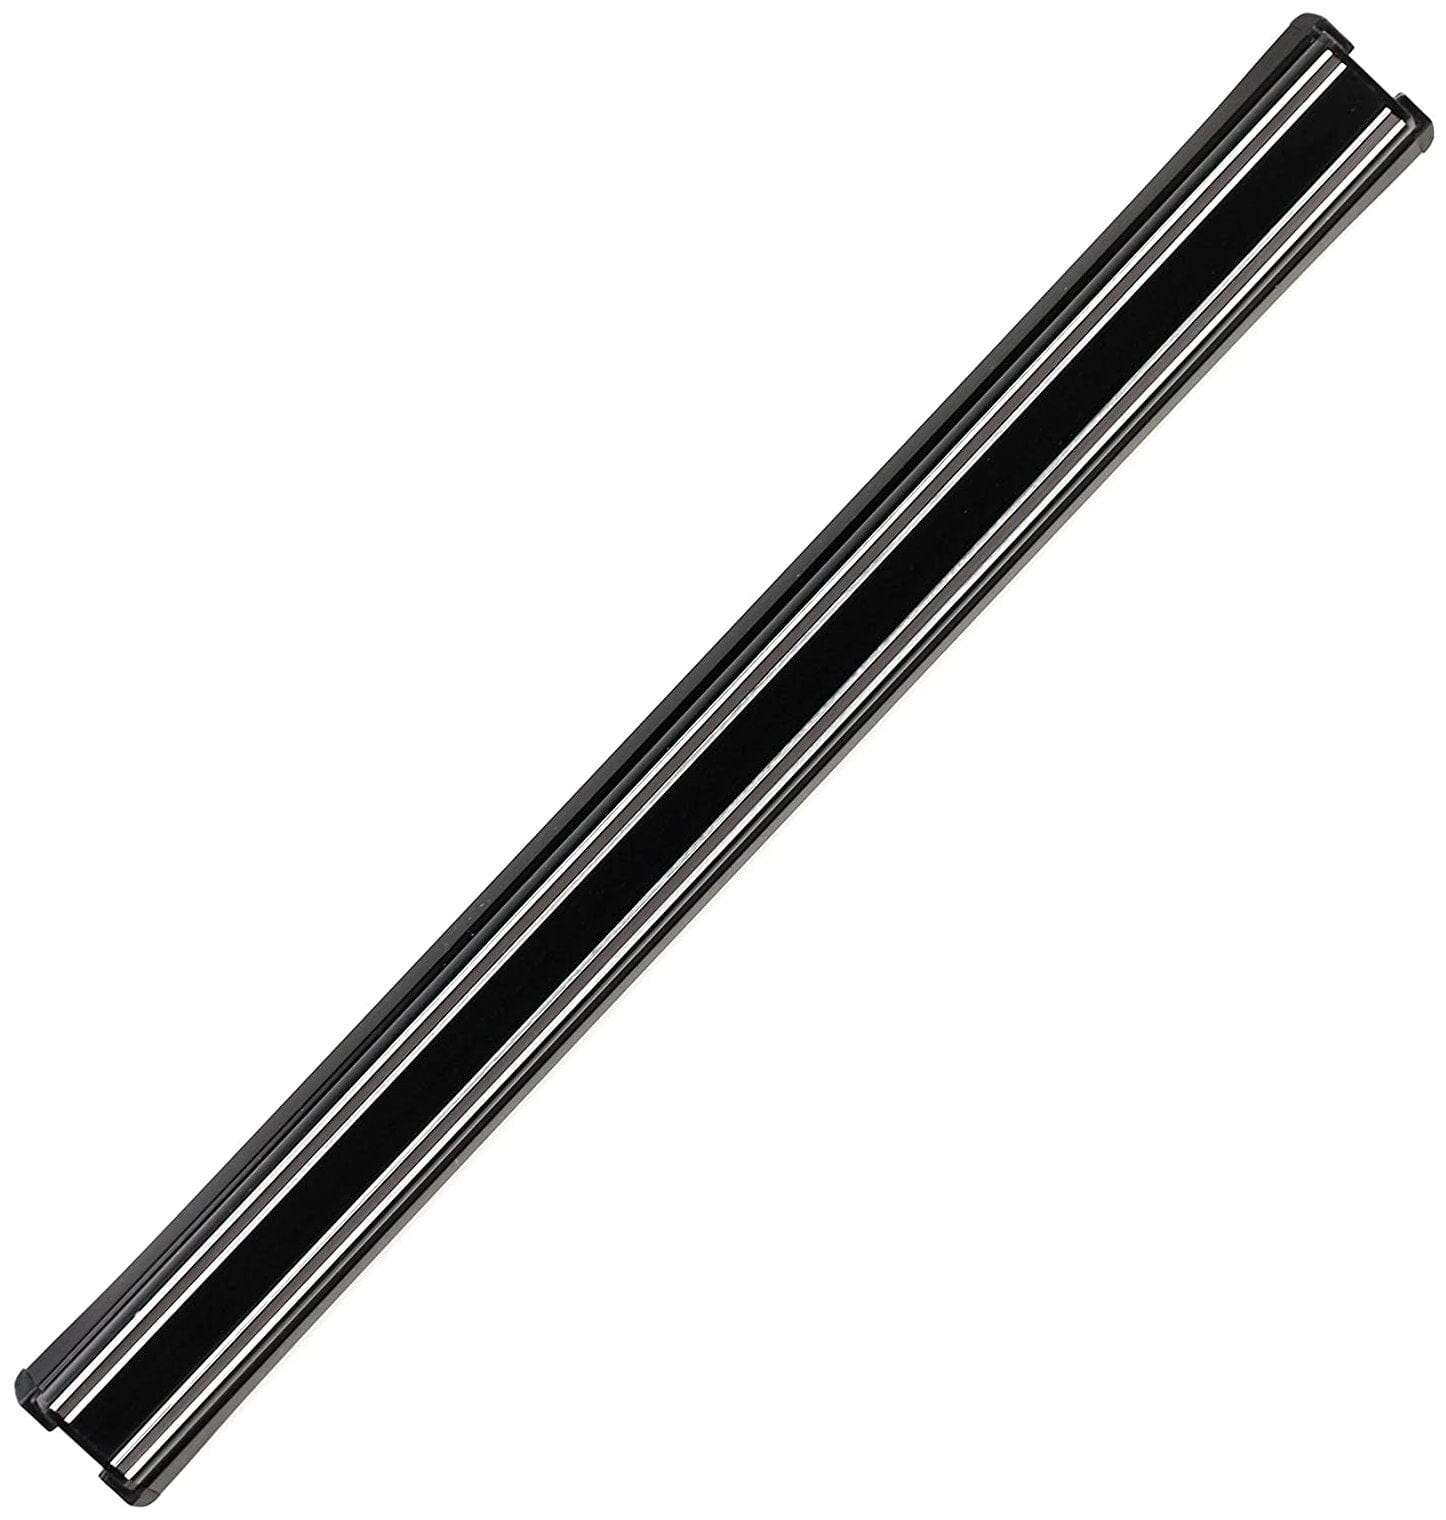 Bisbell Magnetic Knife Rack #B343P45 - Black 450mm